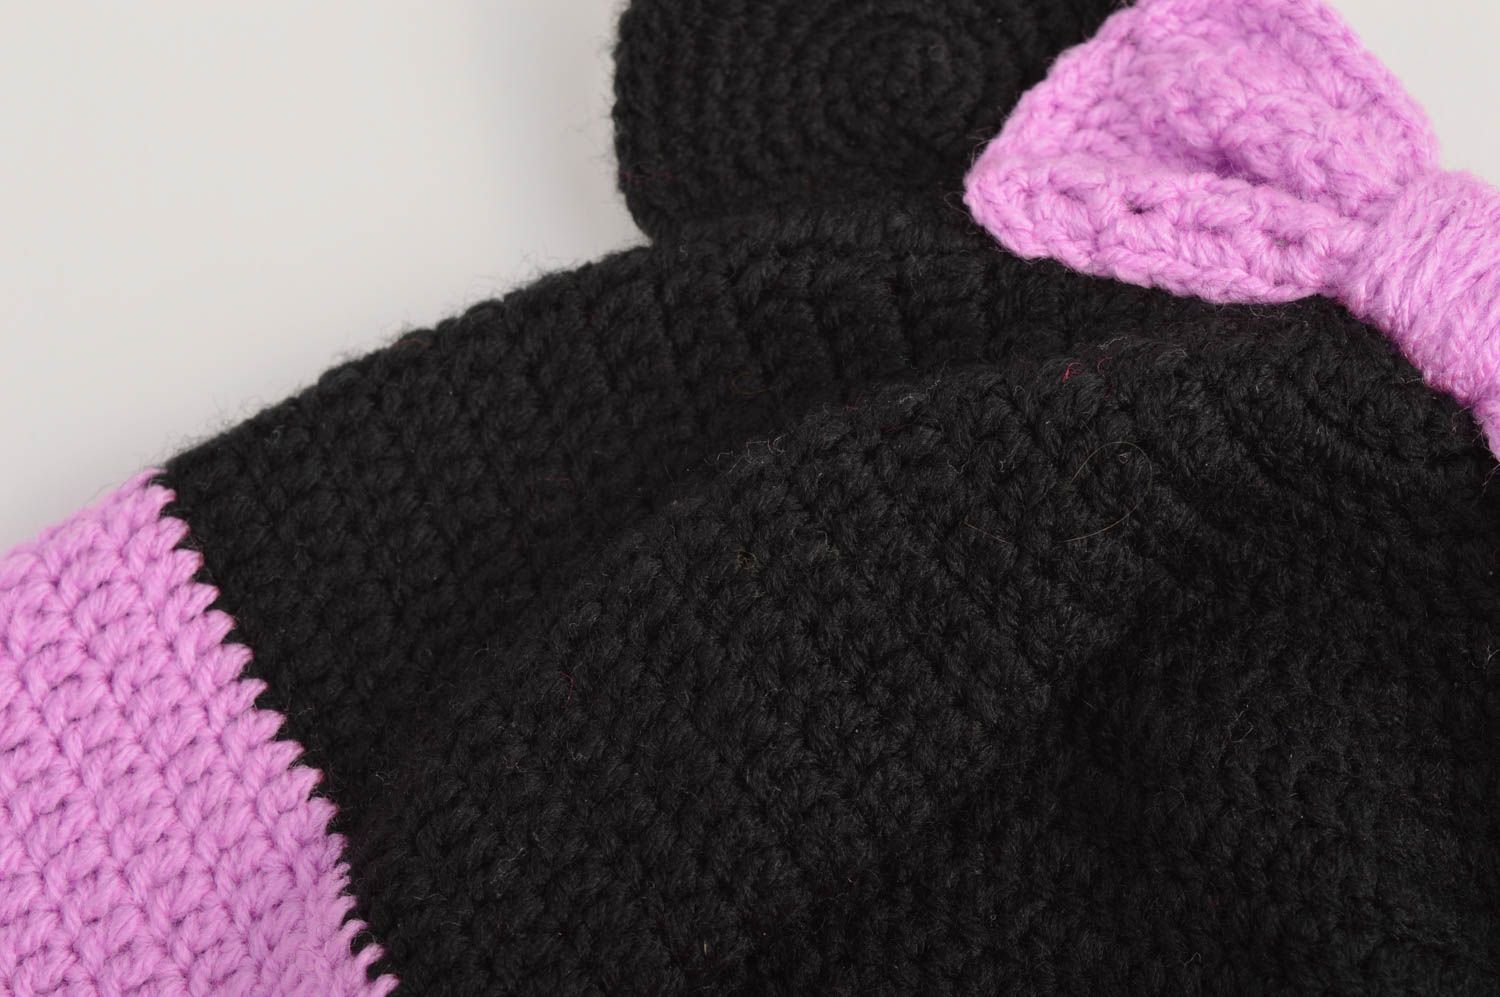 Handmade warm baby hat crochet hat designs winter head accessories ideas photo 4